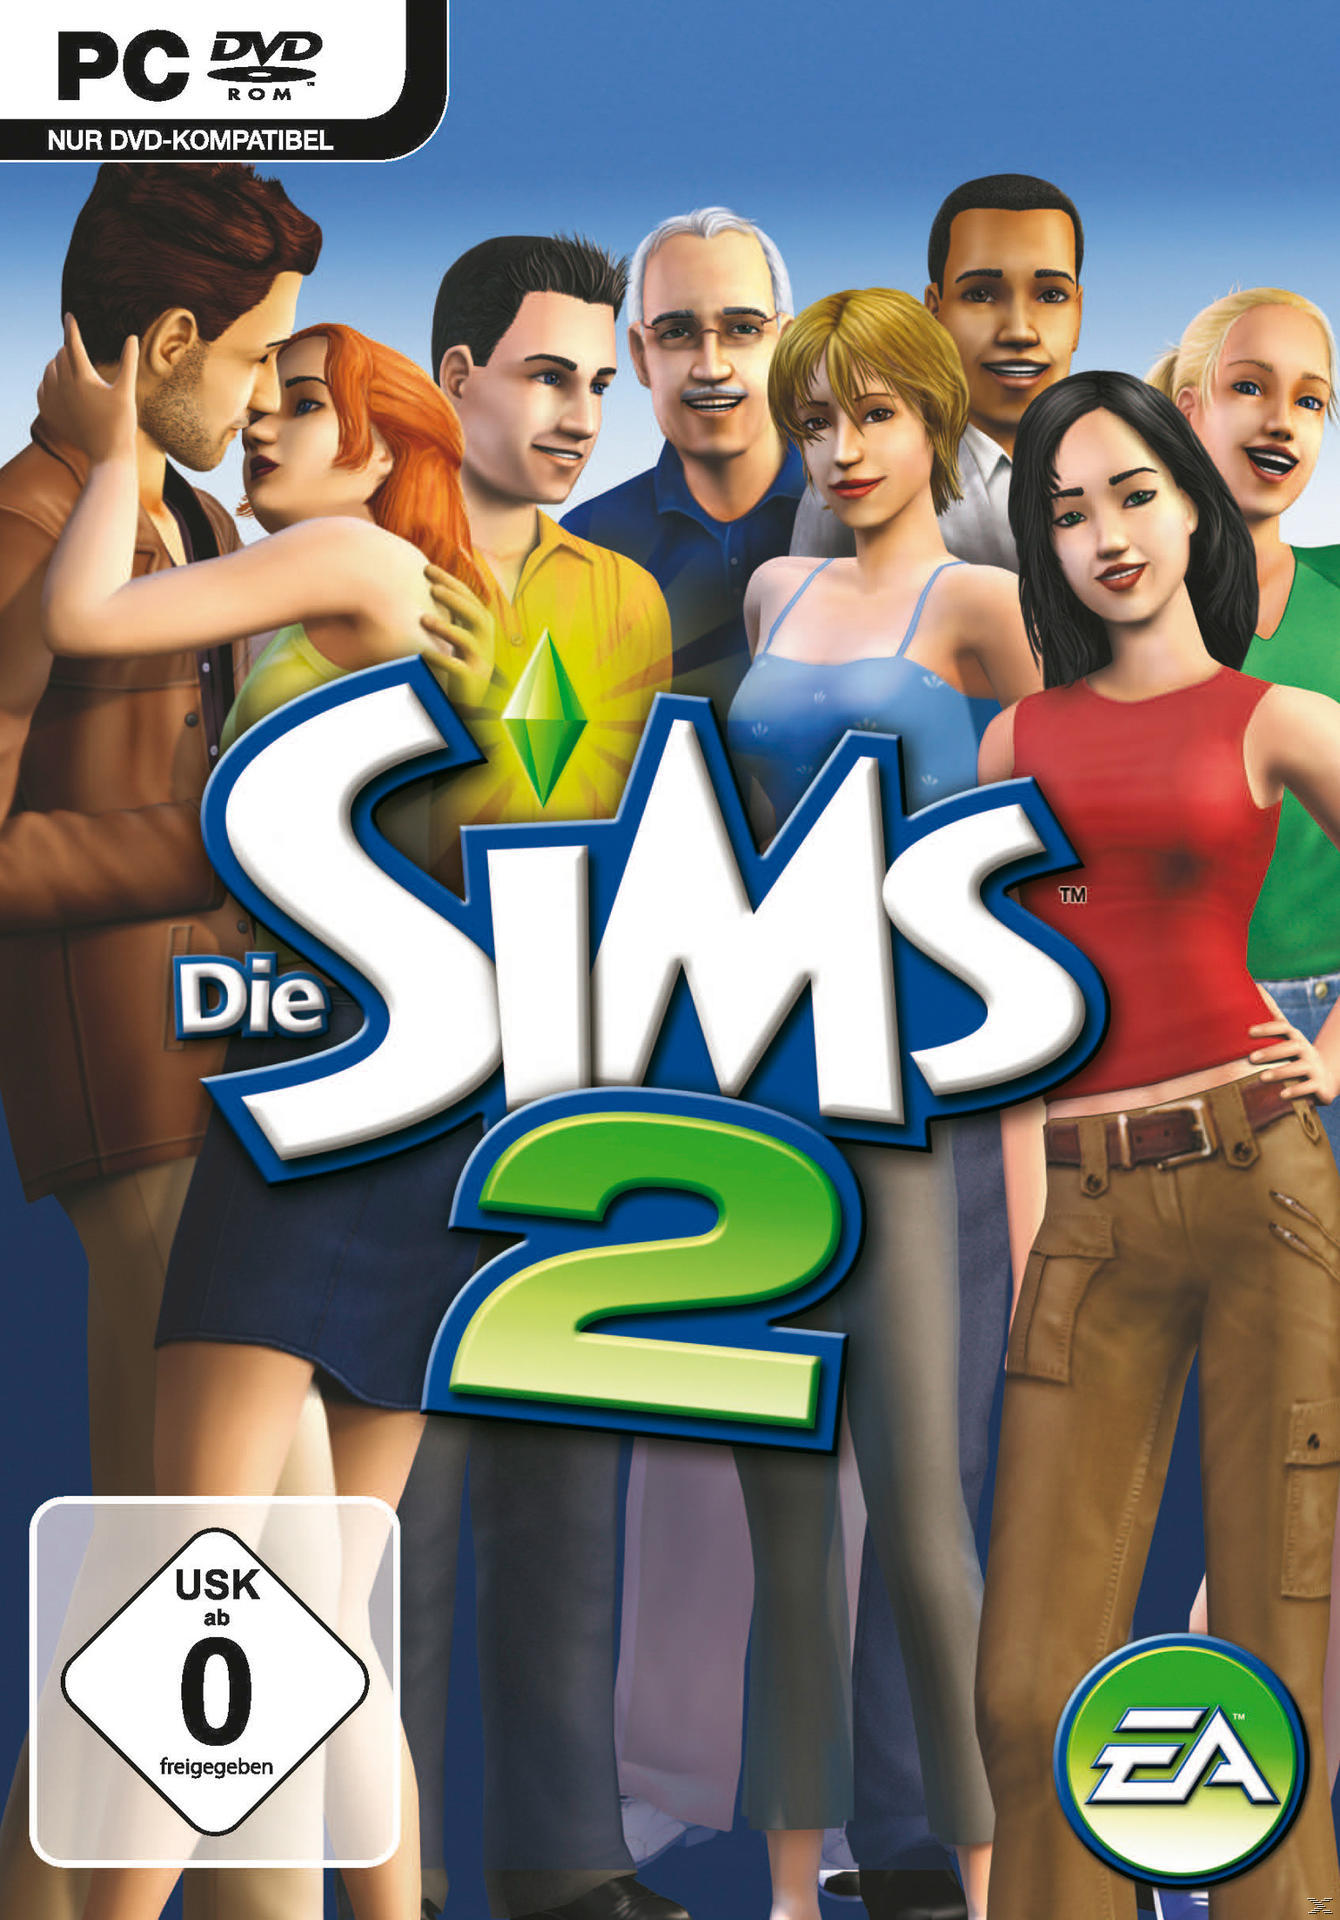 Sims Die - [PC] 2